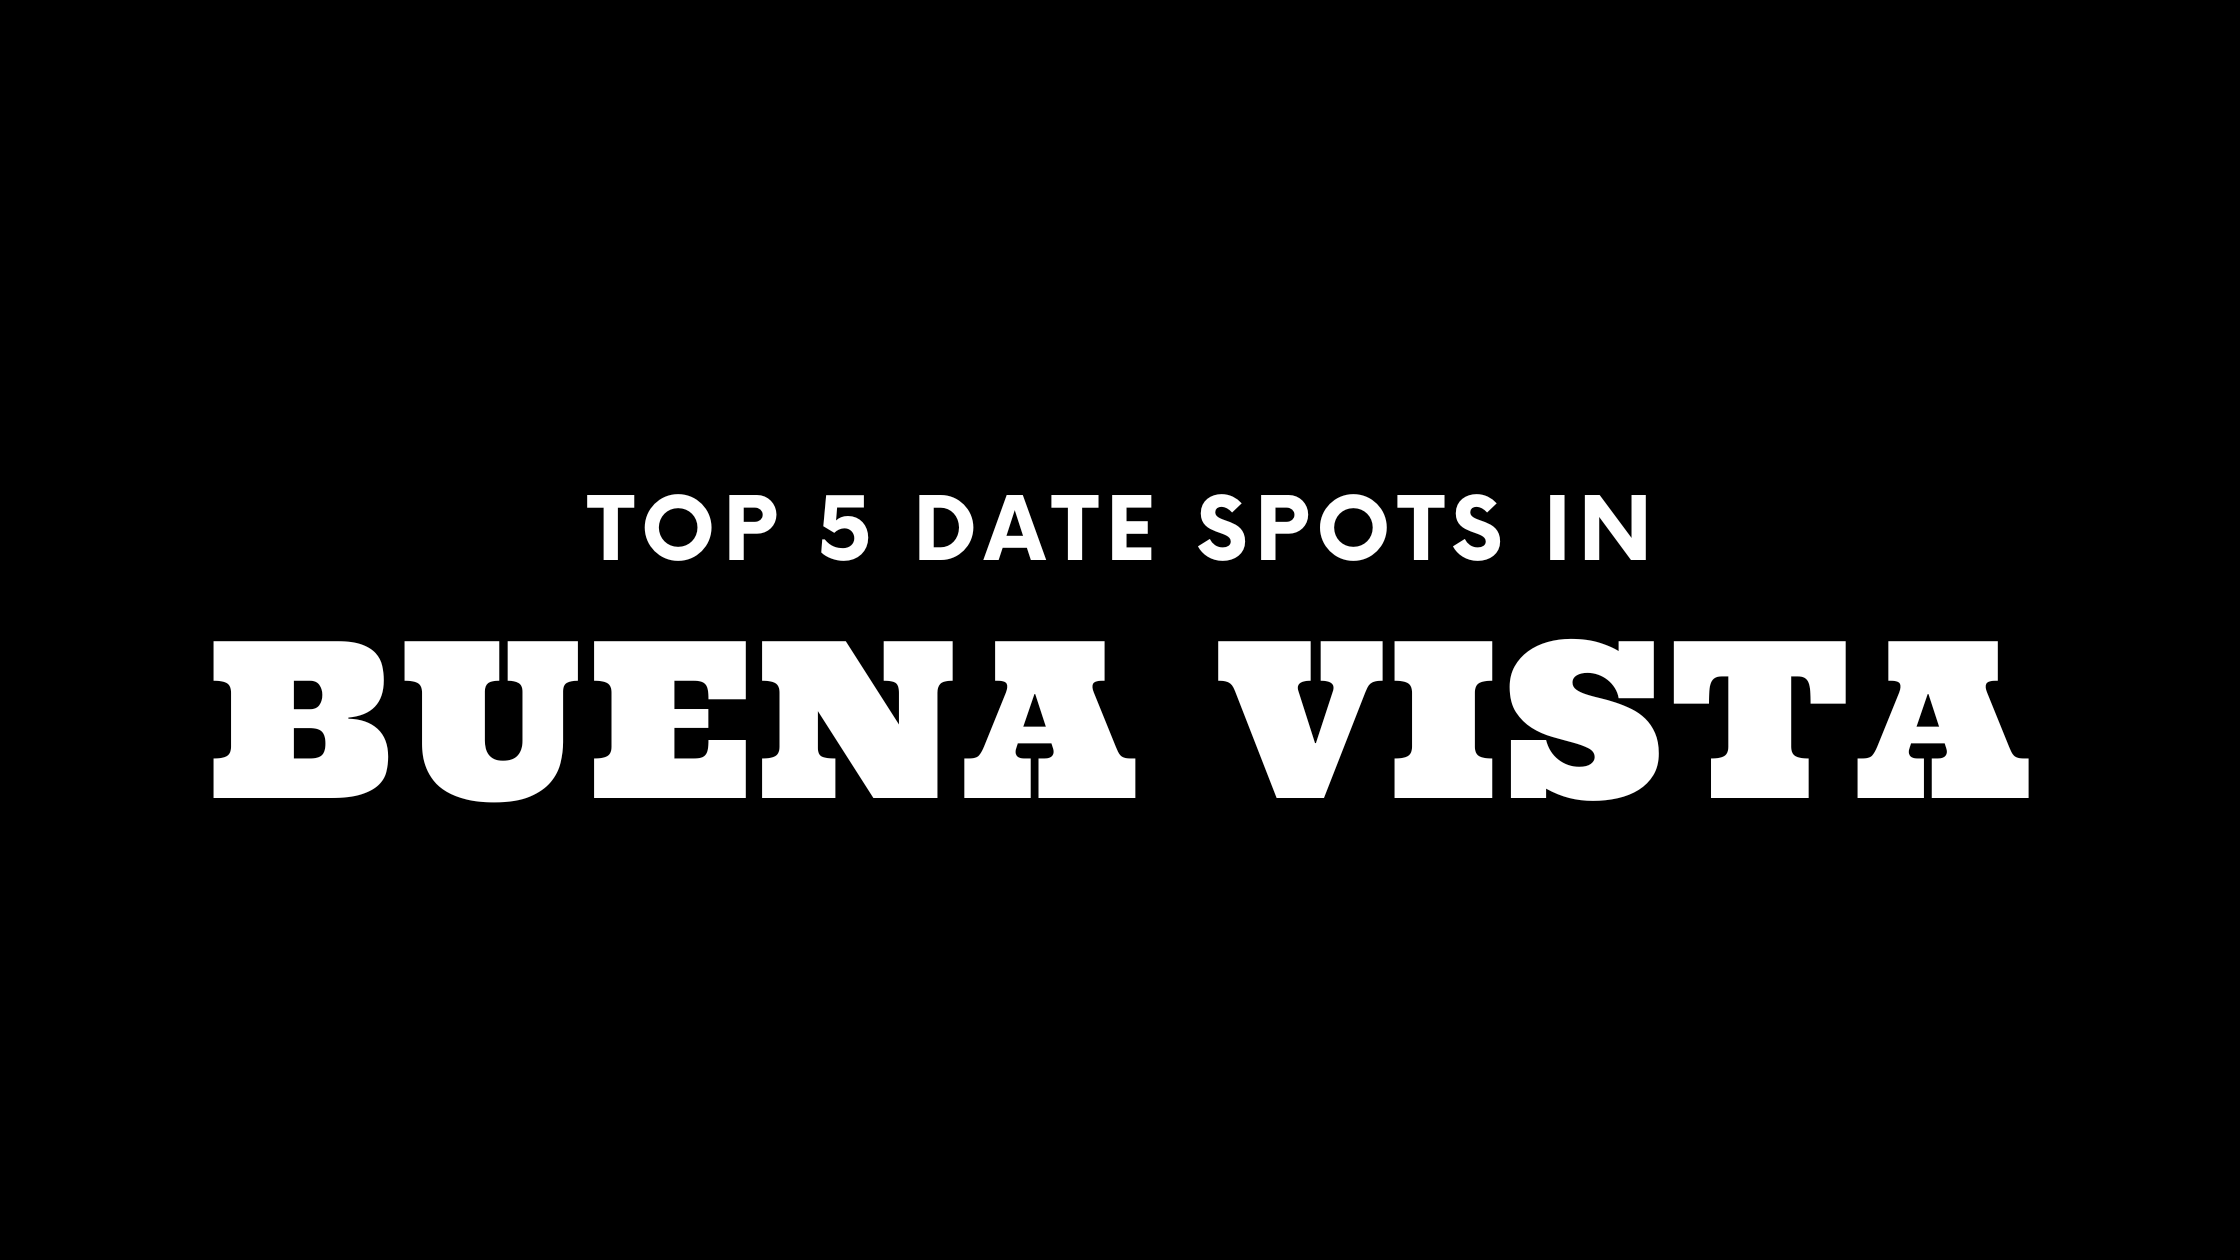 Top 5 Date Spots in Buena Vista